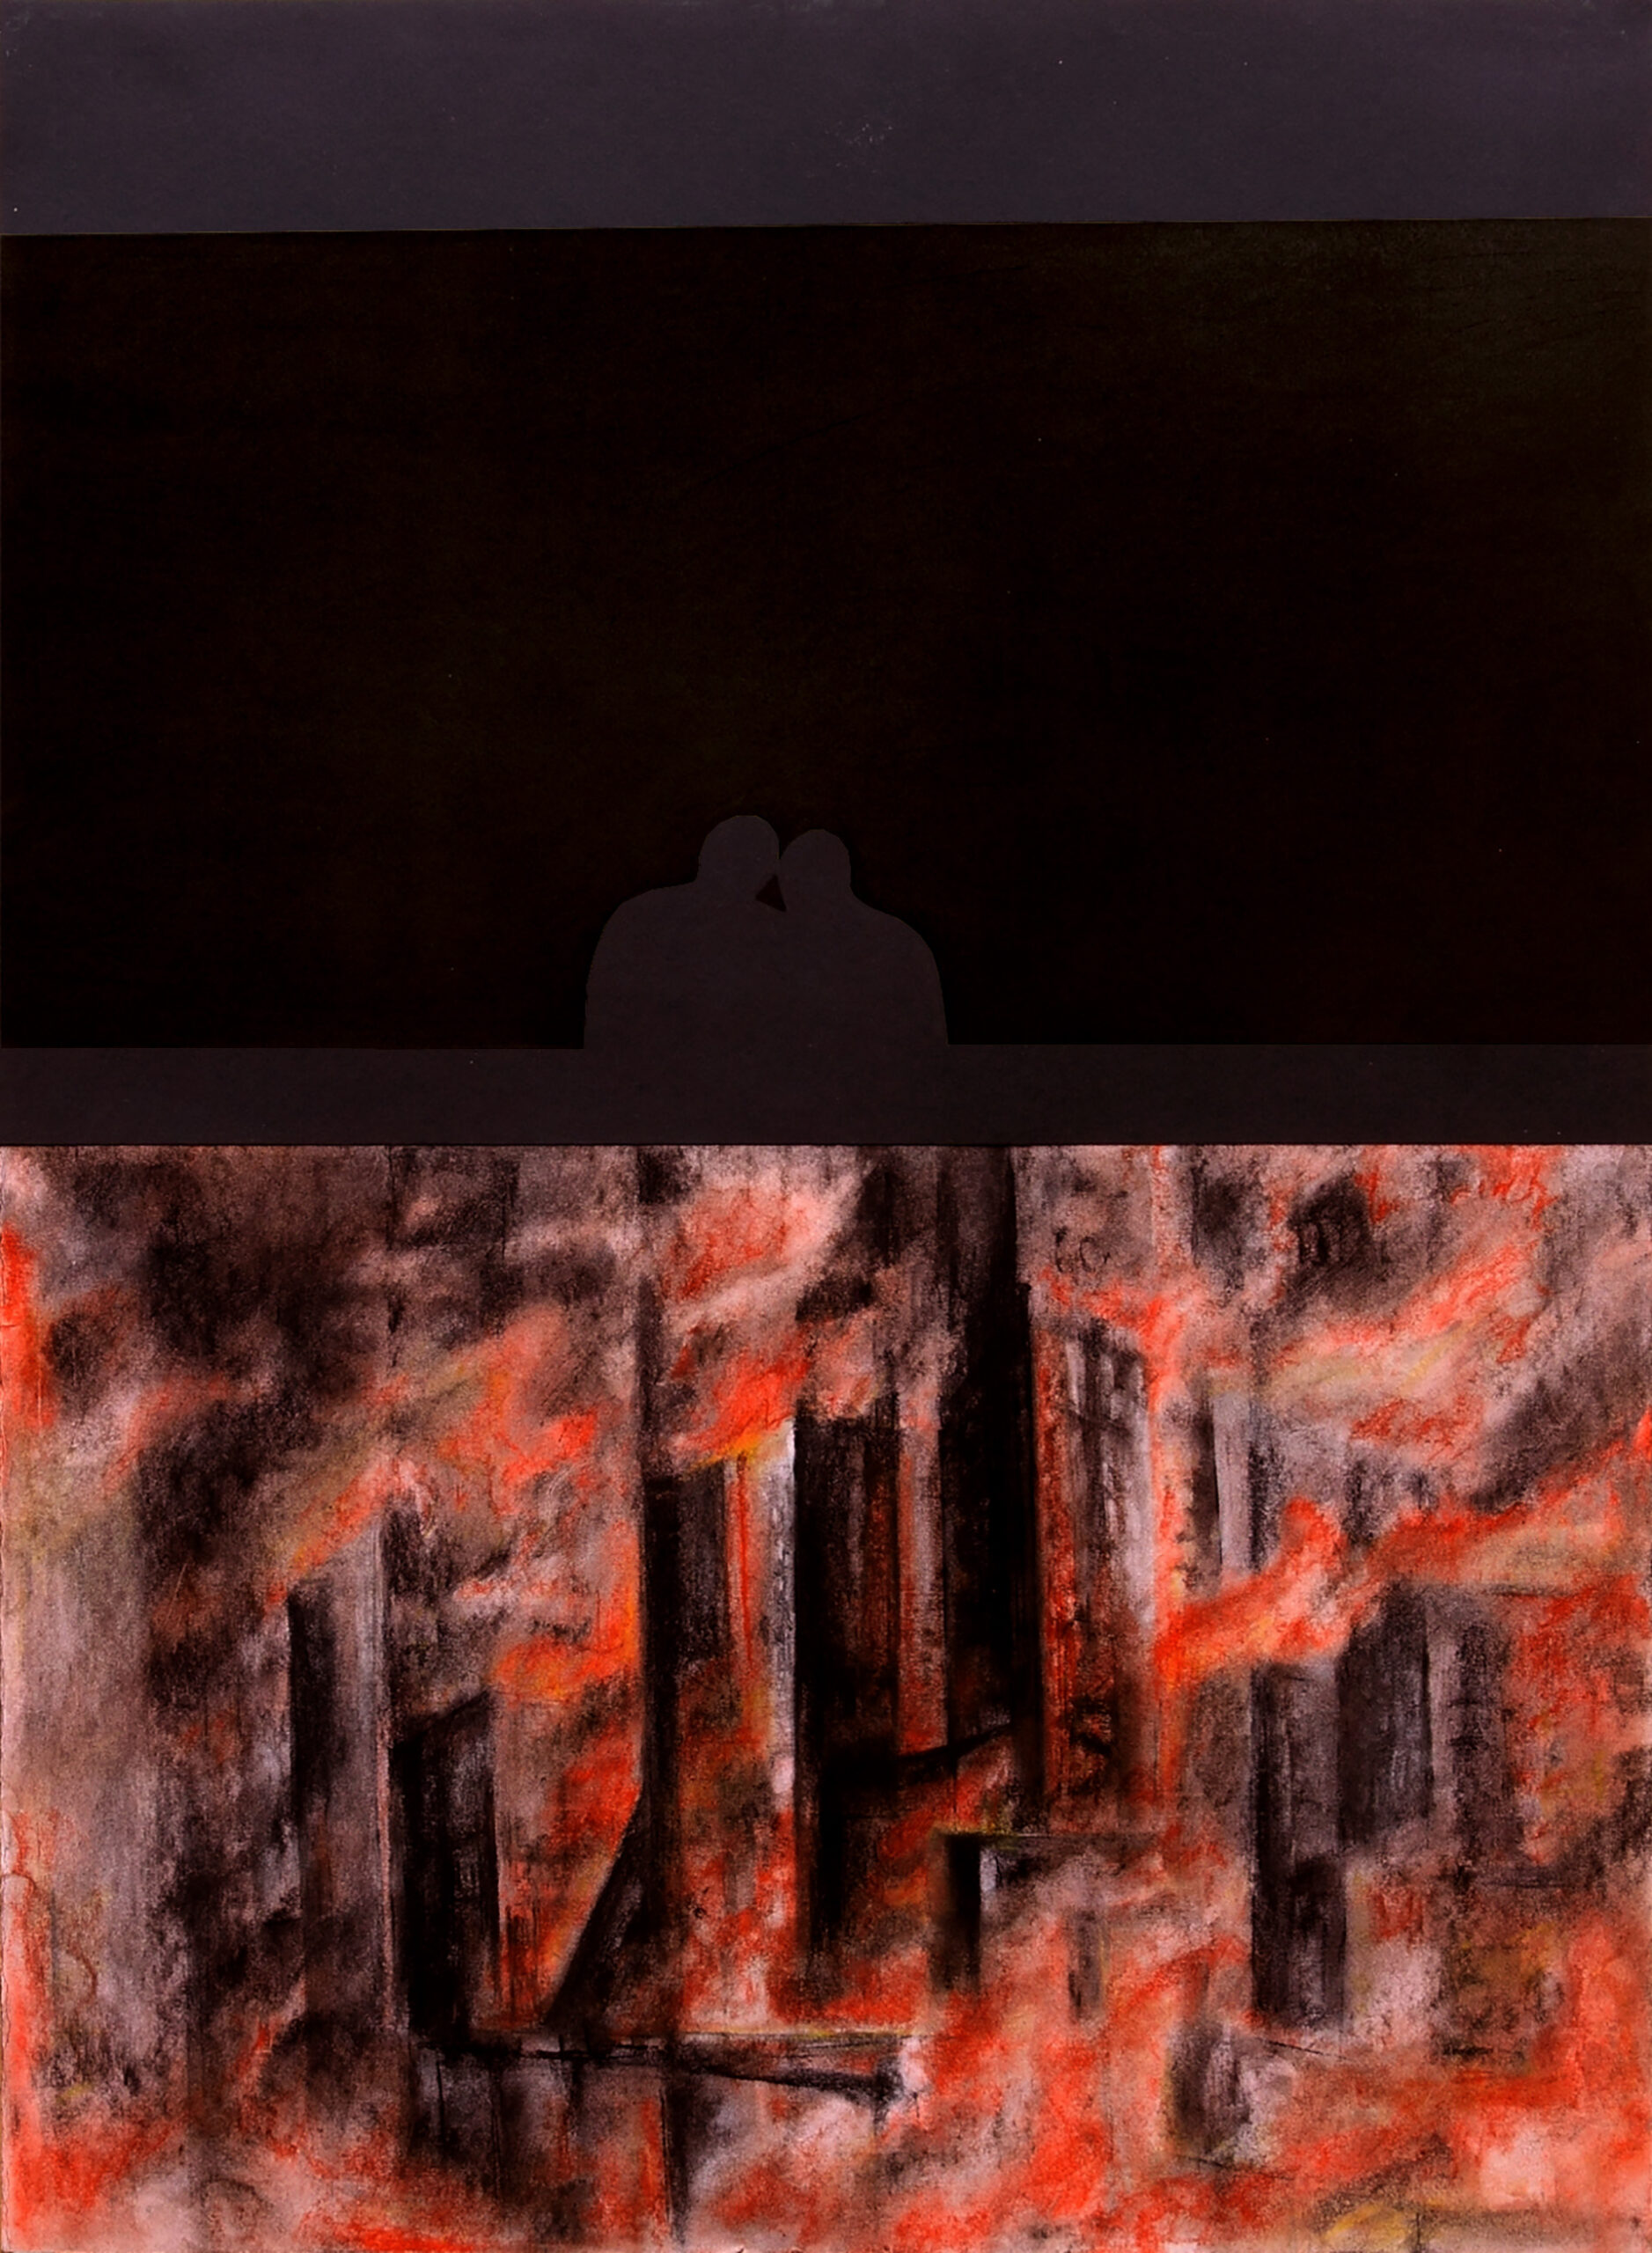 8. Tekst alternatywny: Kadr obrazu dzieli się na dwie  równe, poziome części. Górna część przedstawia czarny poziomy pas, na którym widać dwa kształty mogące przypominać ludzkie postacie. Dolna część może przypominać płonące miasto.